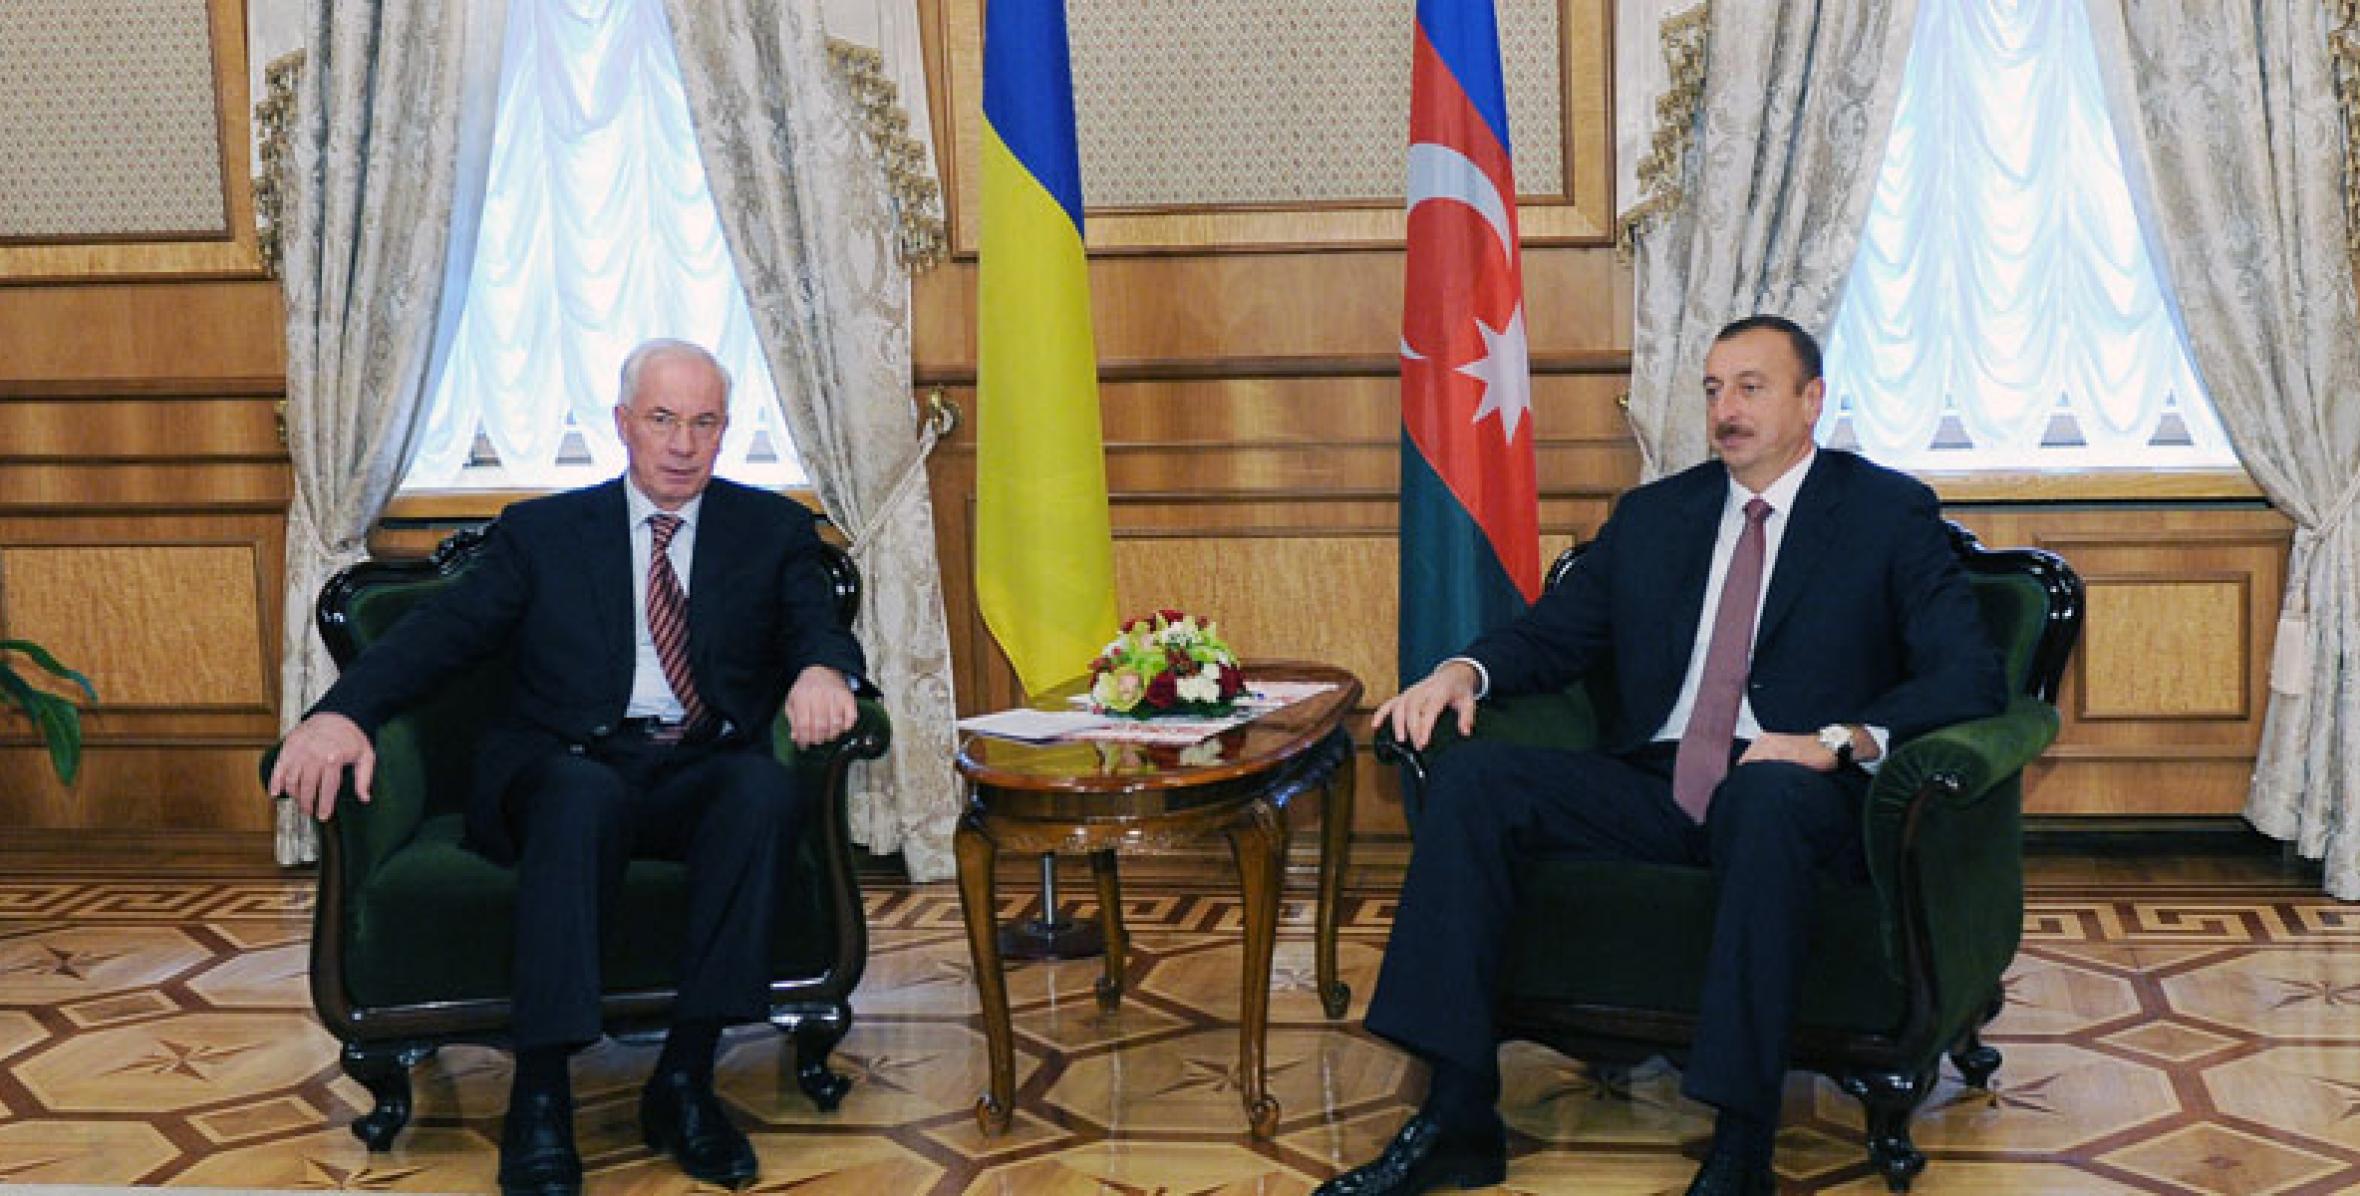 Ilham Aliyev received Nikolay Azarov, the Prime Minister of Ukraine in Kiev